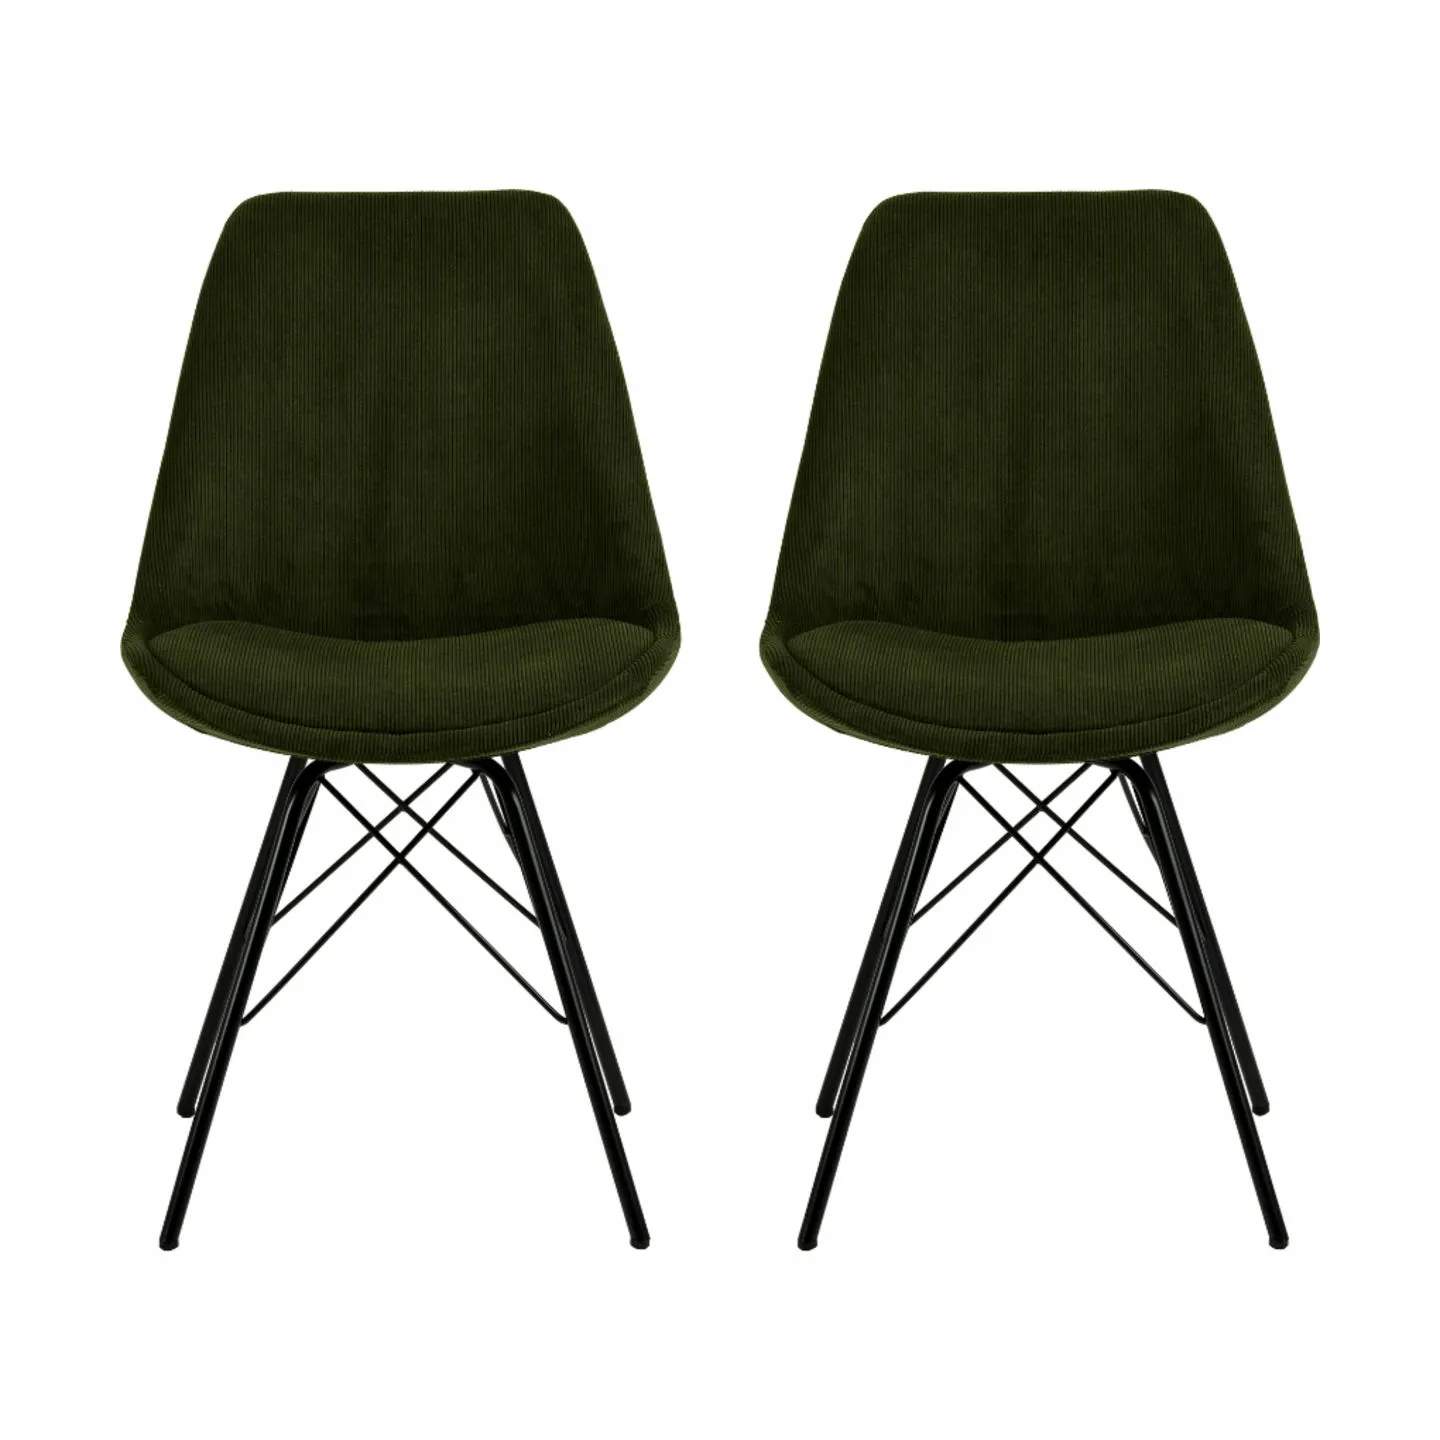 Eris Spisebordsstol - 2 stk., olivengrøn/sort, large